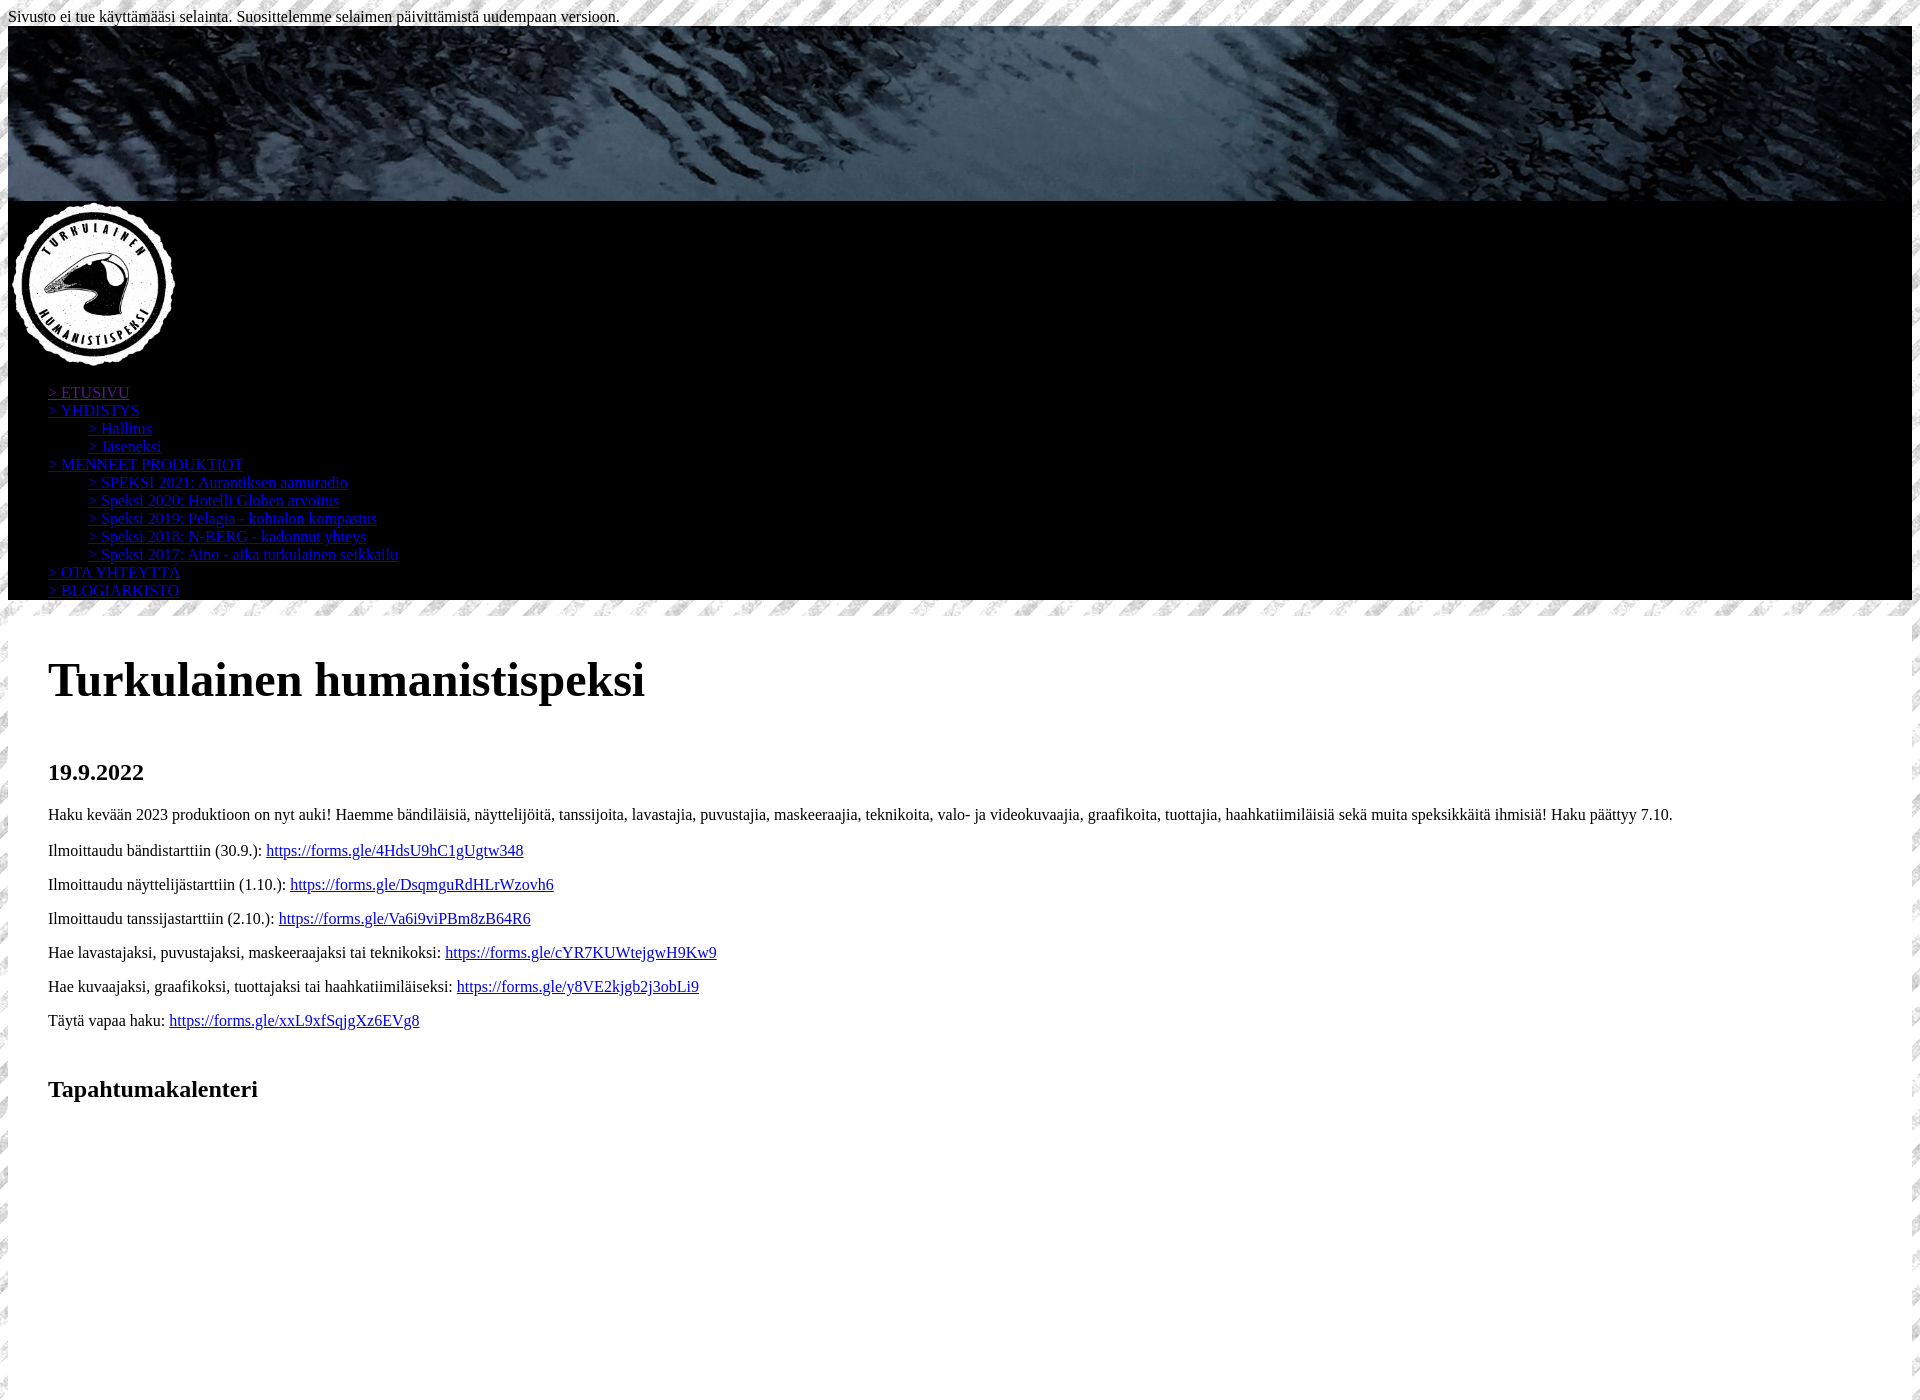 Skärmdump för turkulainenhumanistispeksi.fi